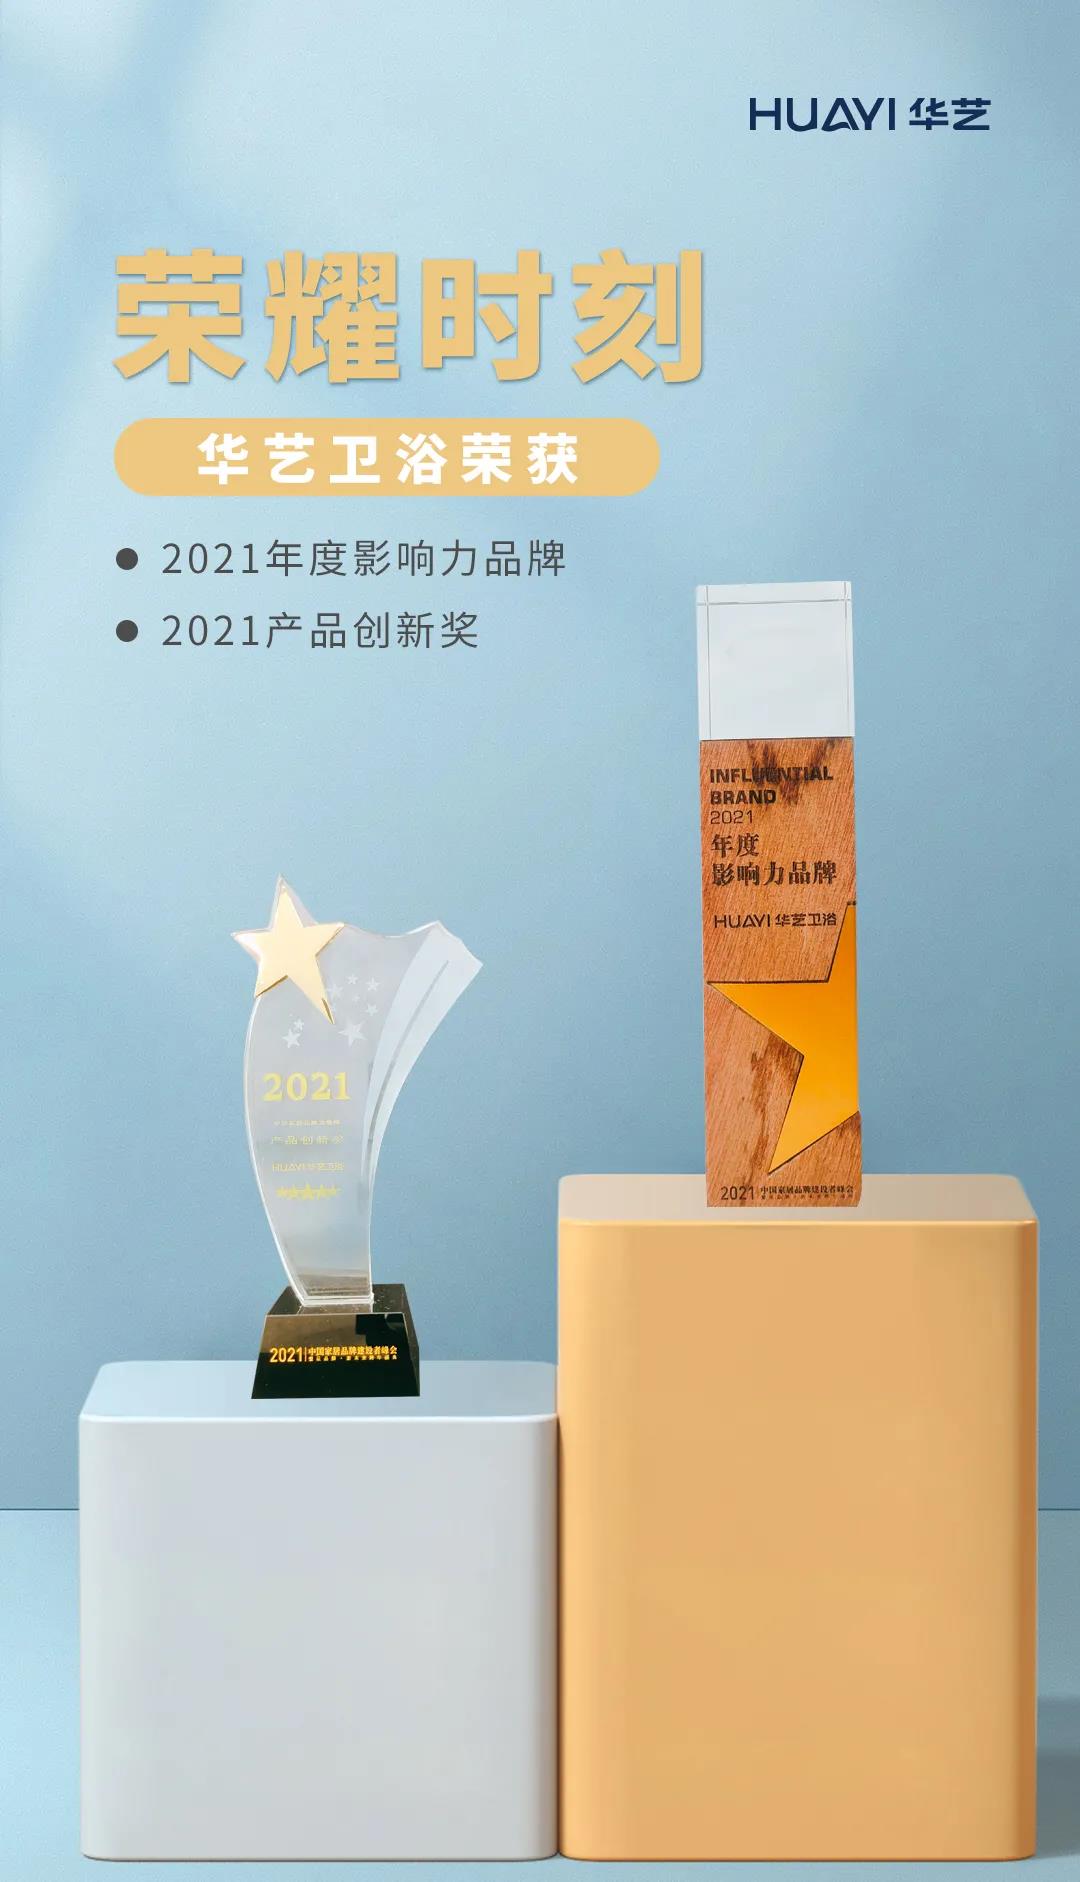 赞！华艺卫浴斩获“2021年度影响力品牌”、“2021产品创新奖”两项大奖